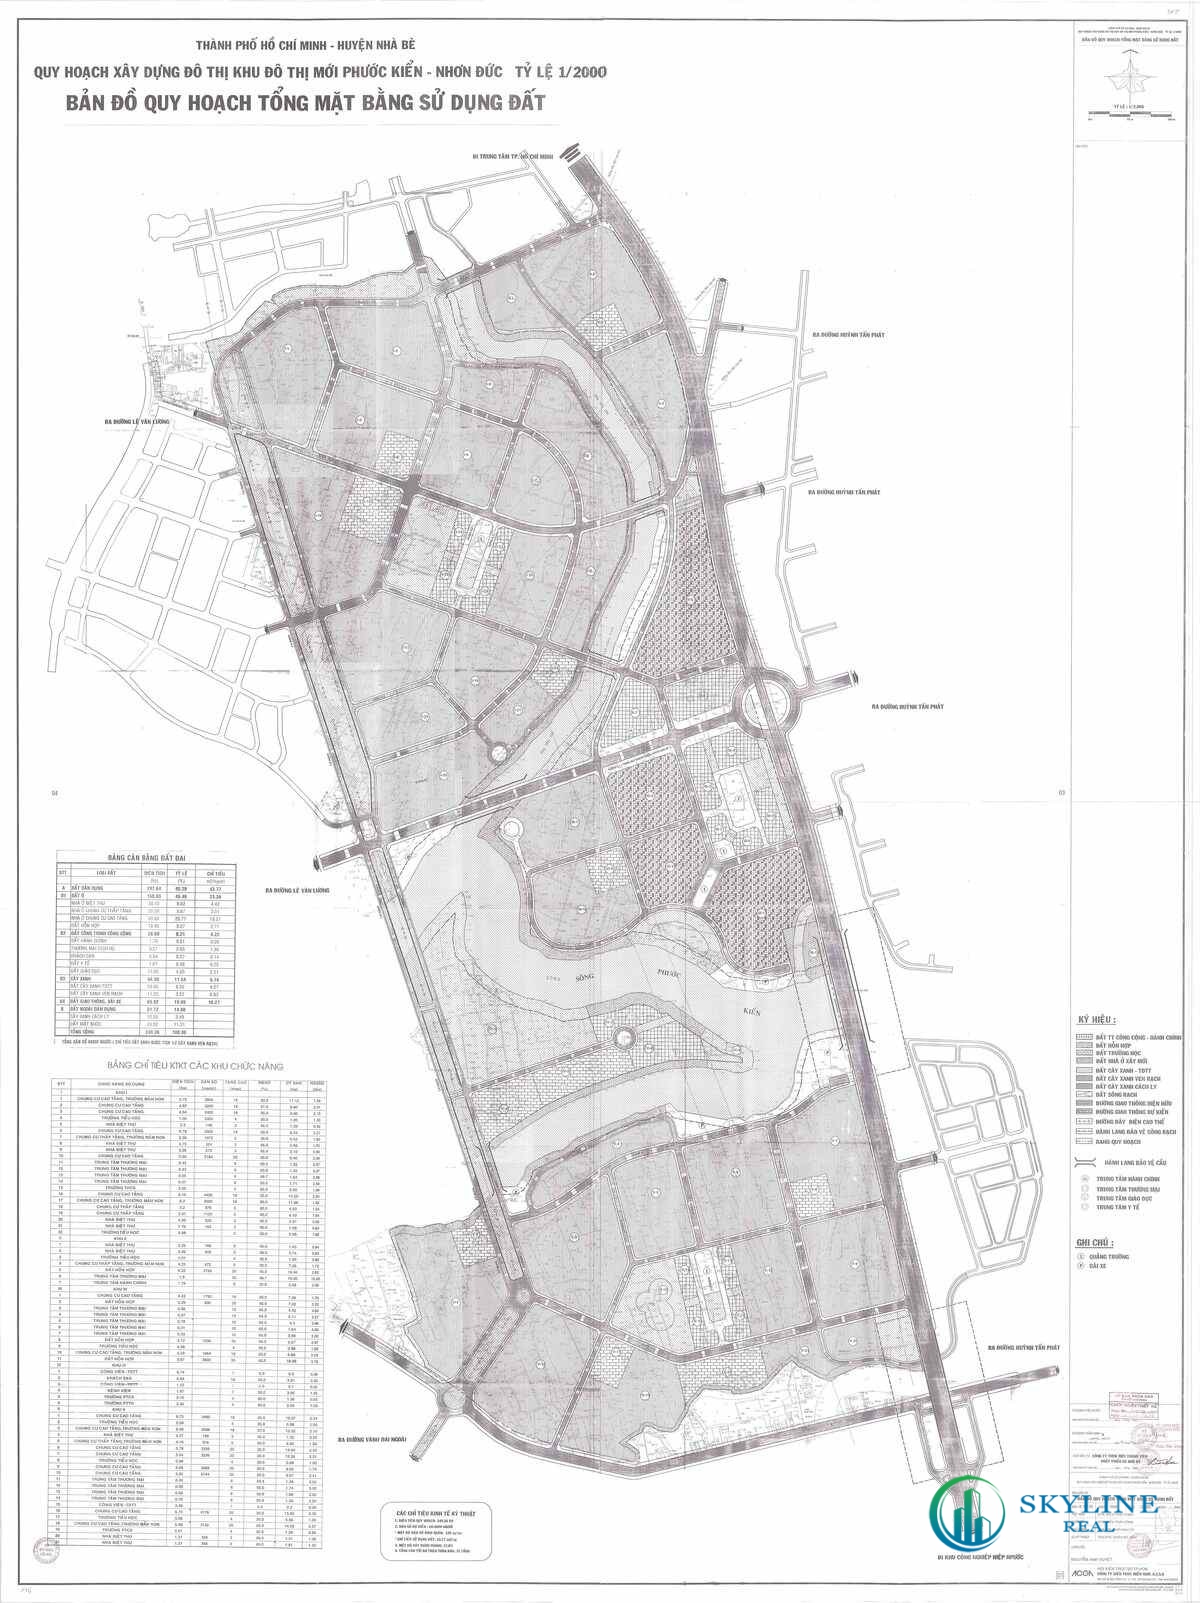 Bản đồ quy hoạch 1/2000 Khu đô thị mới Phước Kiển - Nhơn Đức, Huyện Nhà Bè